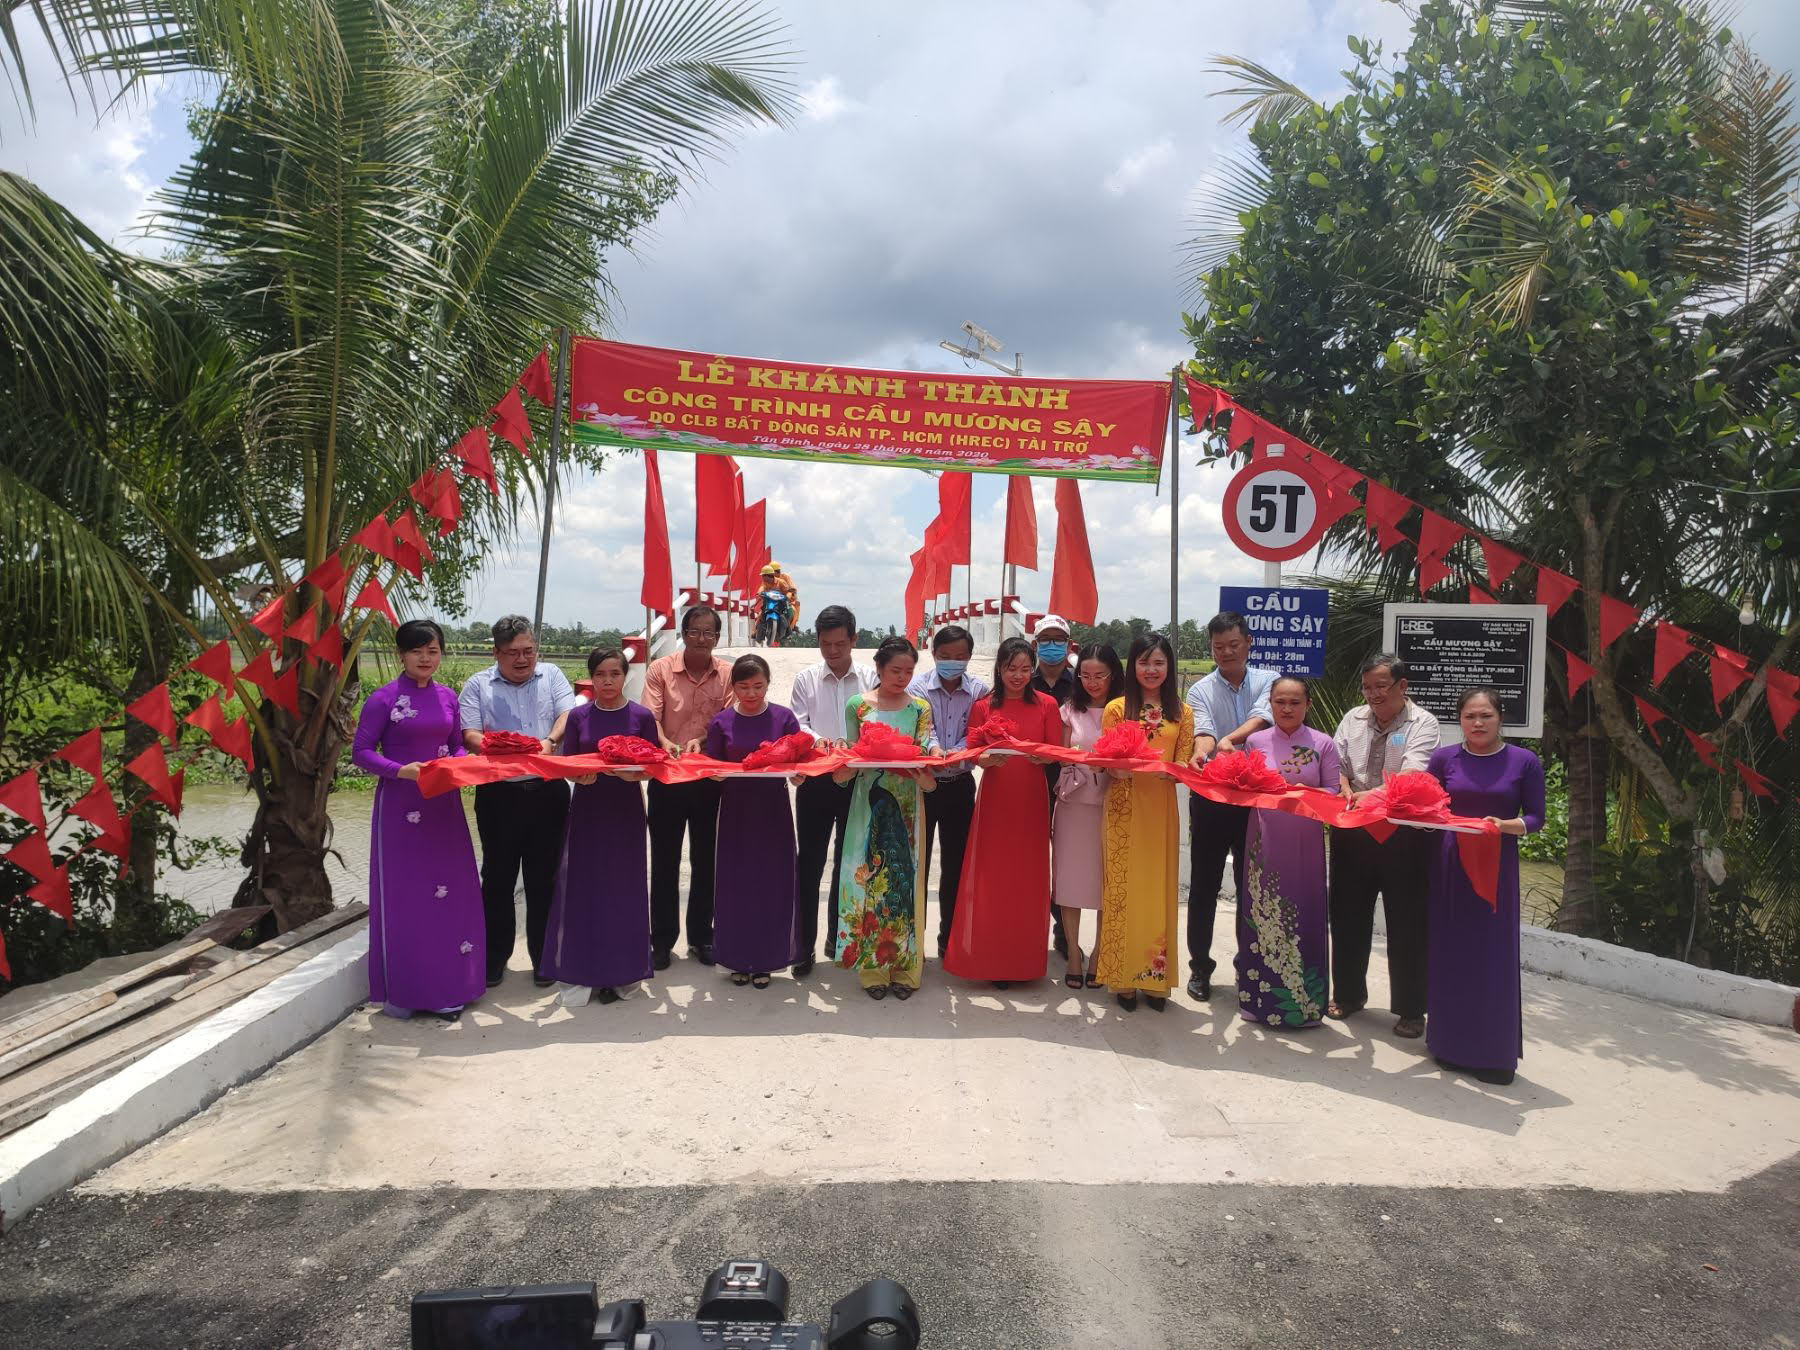 CLB Bất động sản TP.HCM giúp giao thông nông thôn Đồng Tháp - Ảnh 1.